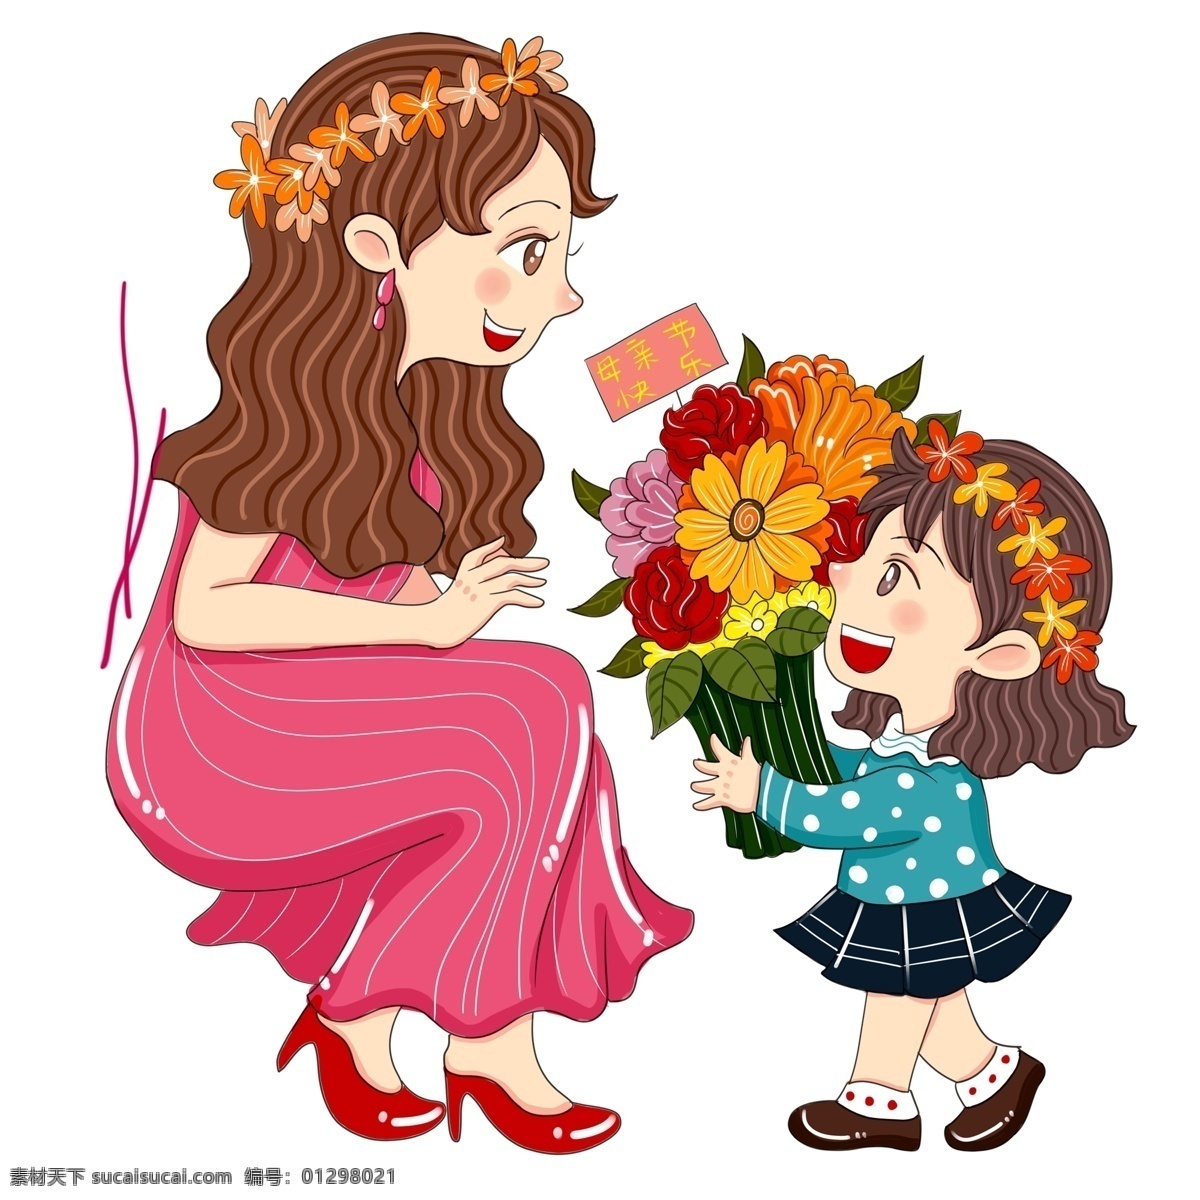 彩绘 母亲节 献花 场景 插画 节日 温馨 手绘 女儿